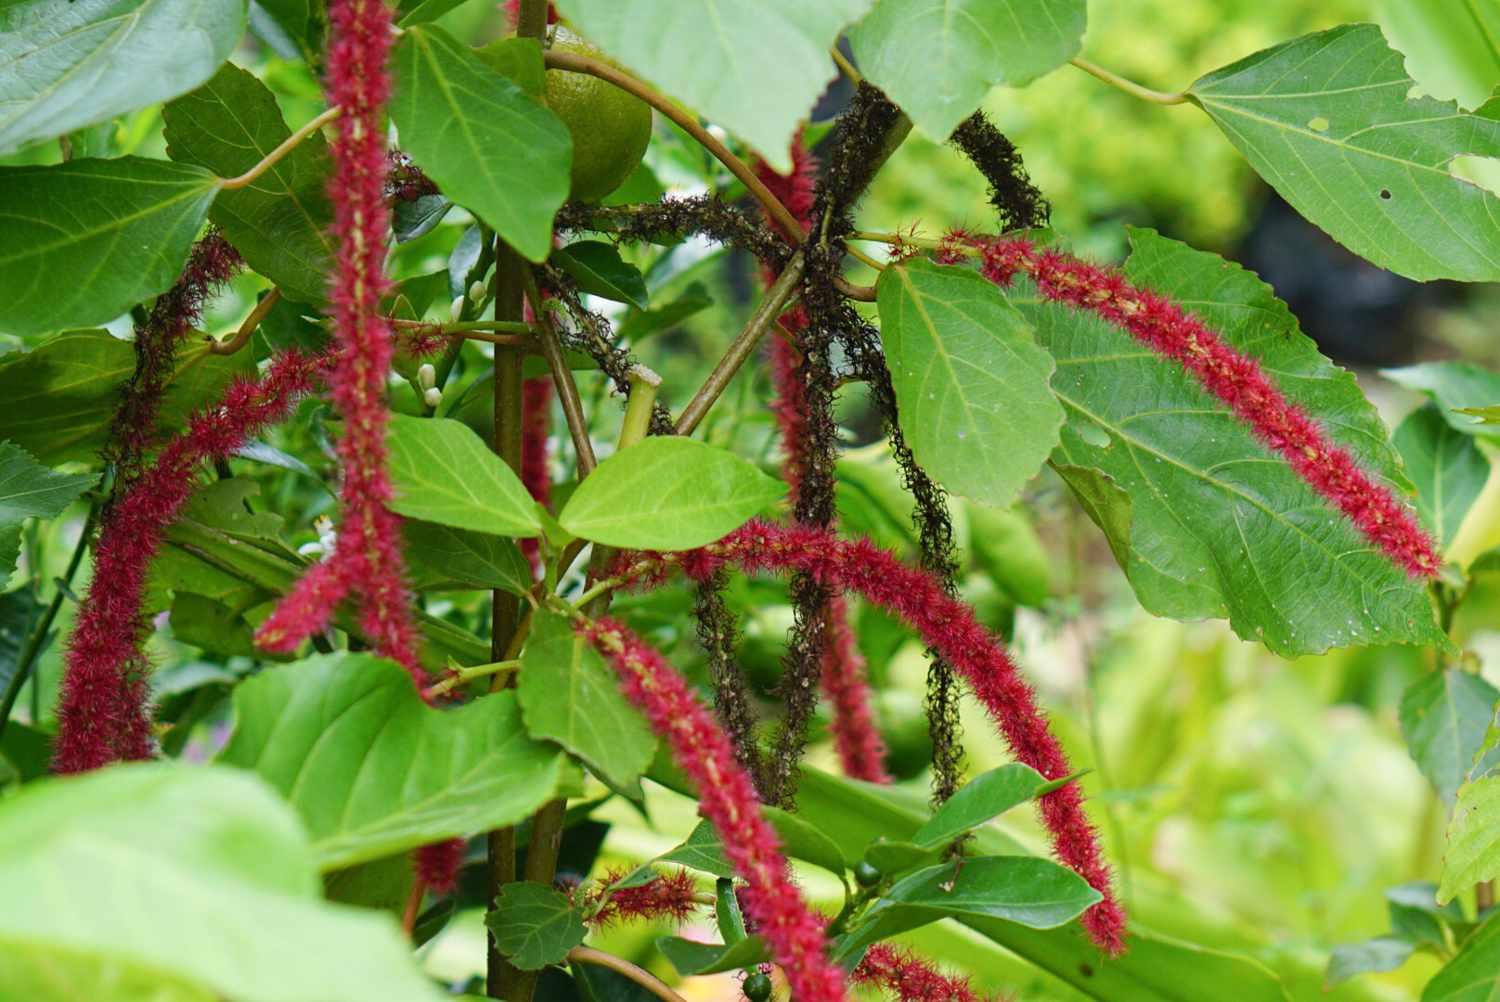 Planta Acalypha com flores vermelhas semelhantes a escovas de garrafa penduradas entre folhas grandes